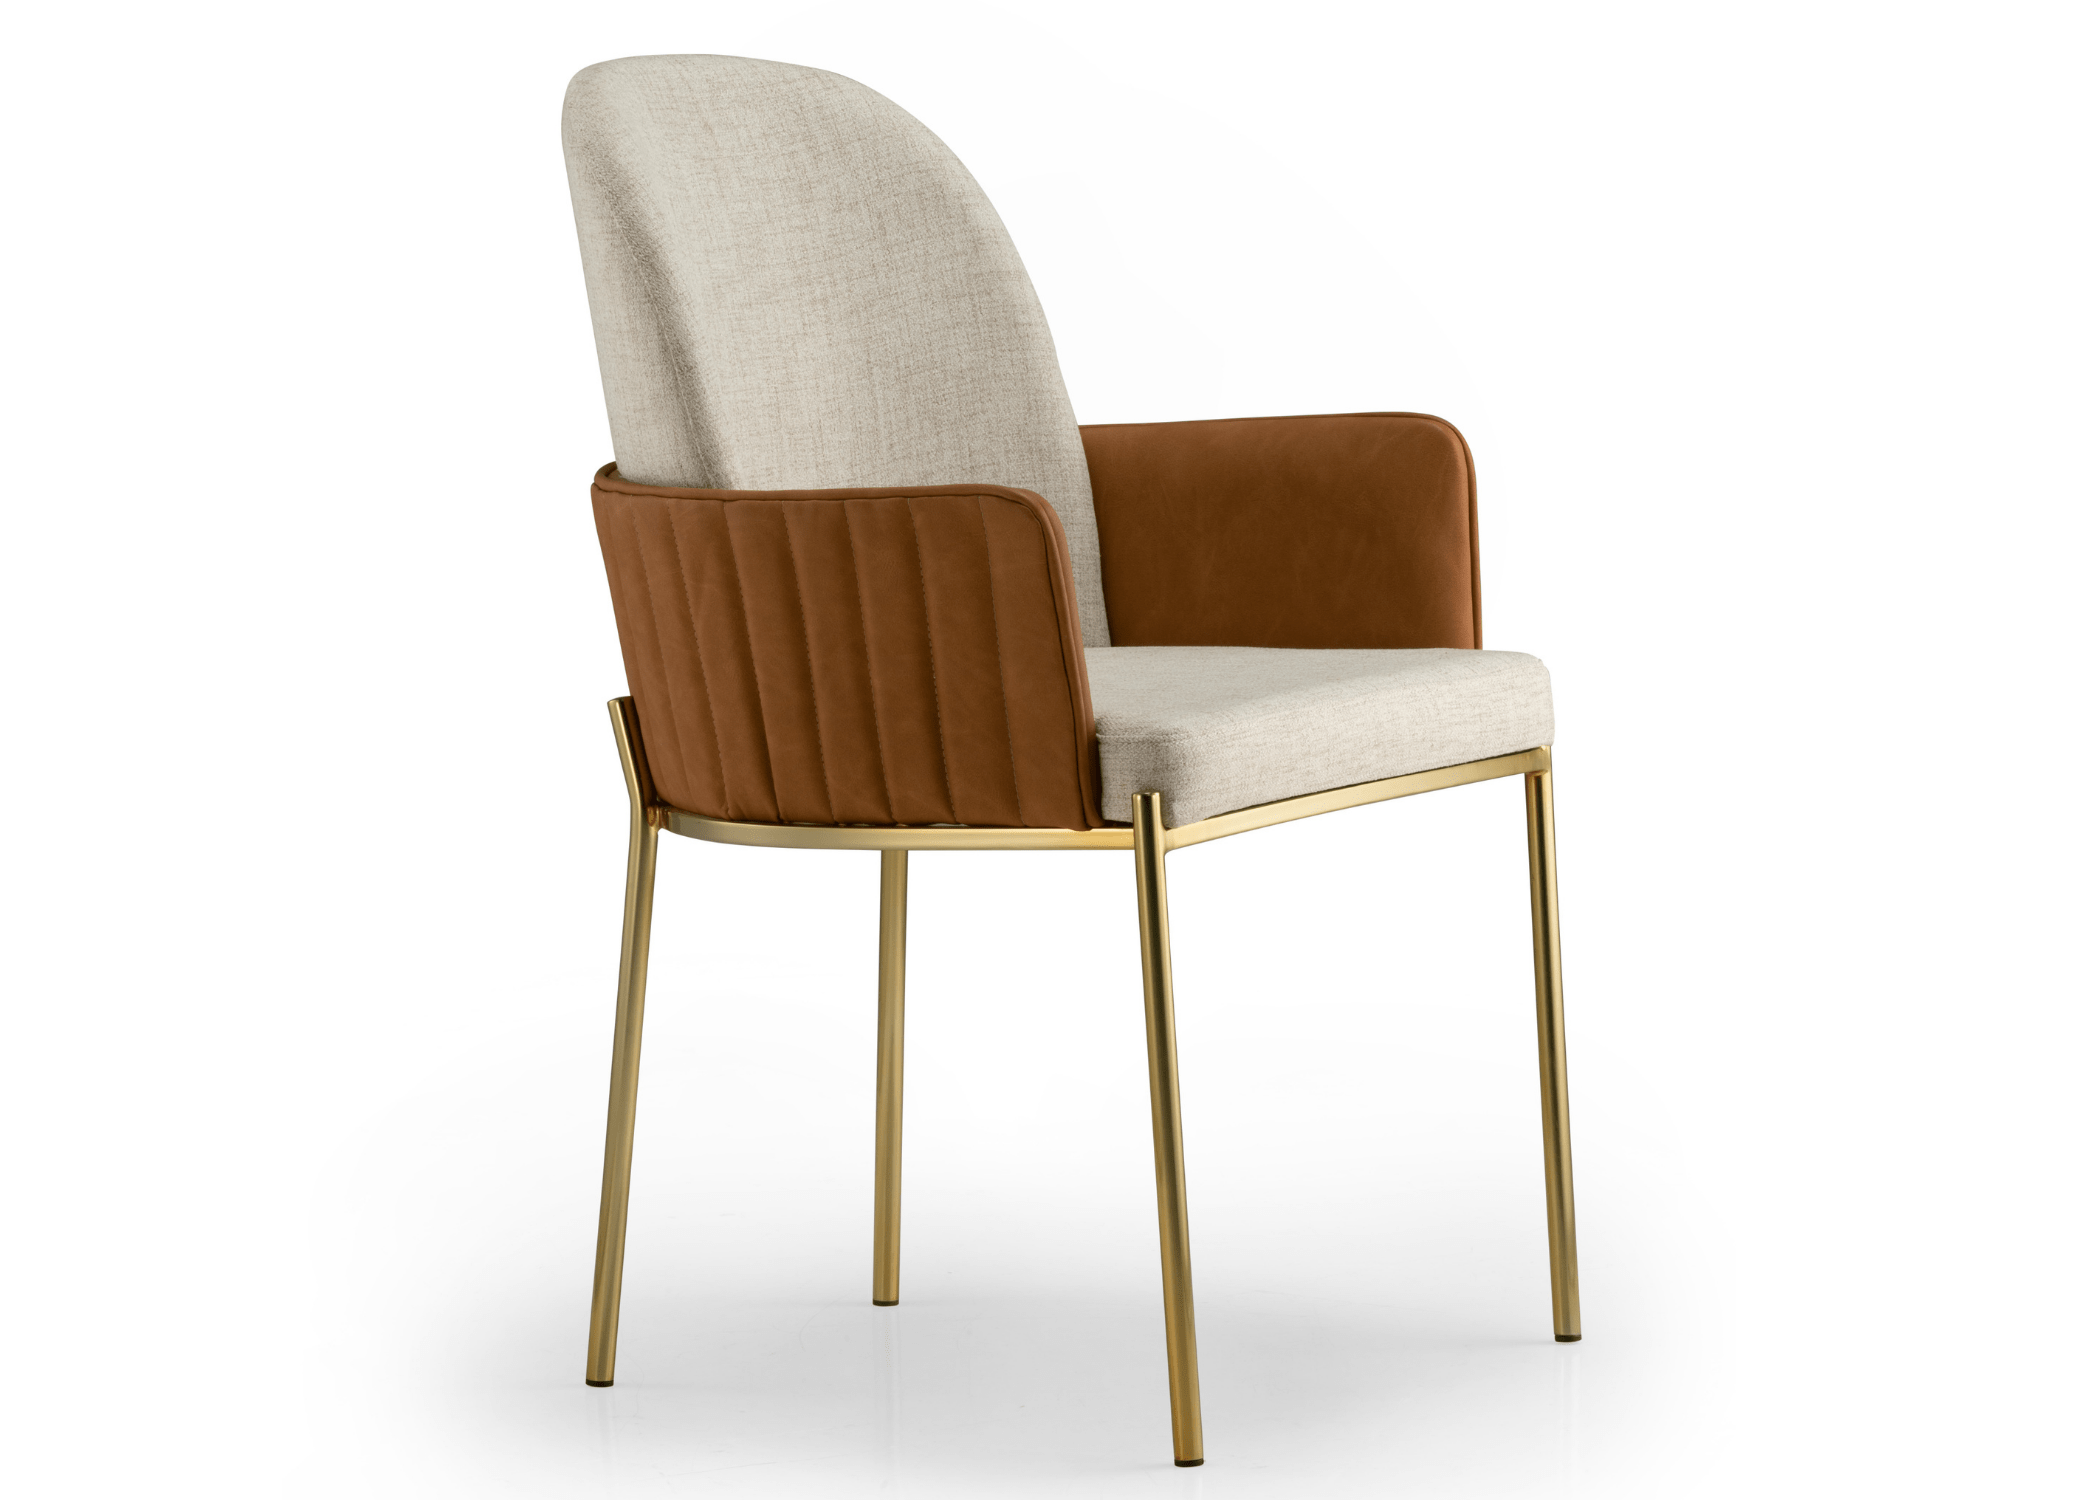 Cadeira Janette: perfeição artesanal com detalhes que fazem a diferença.